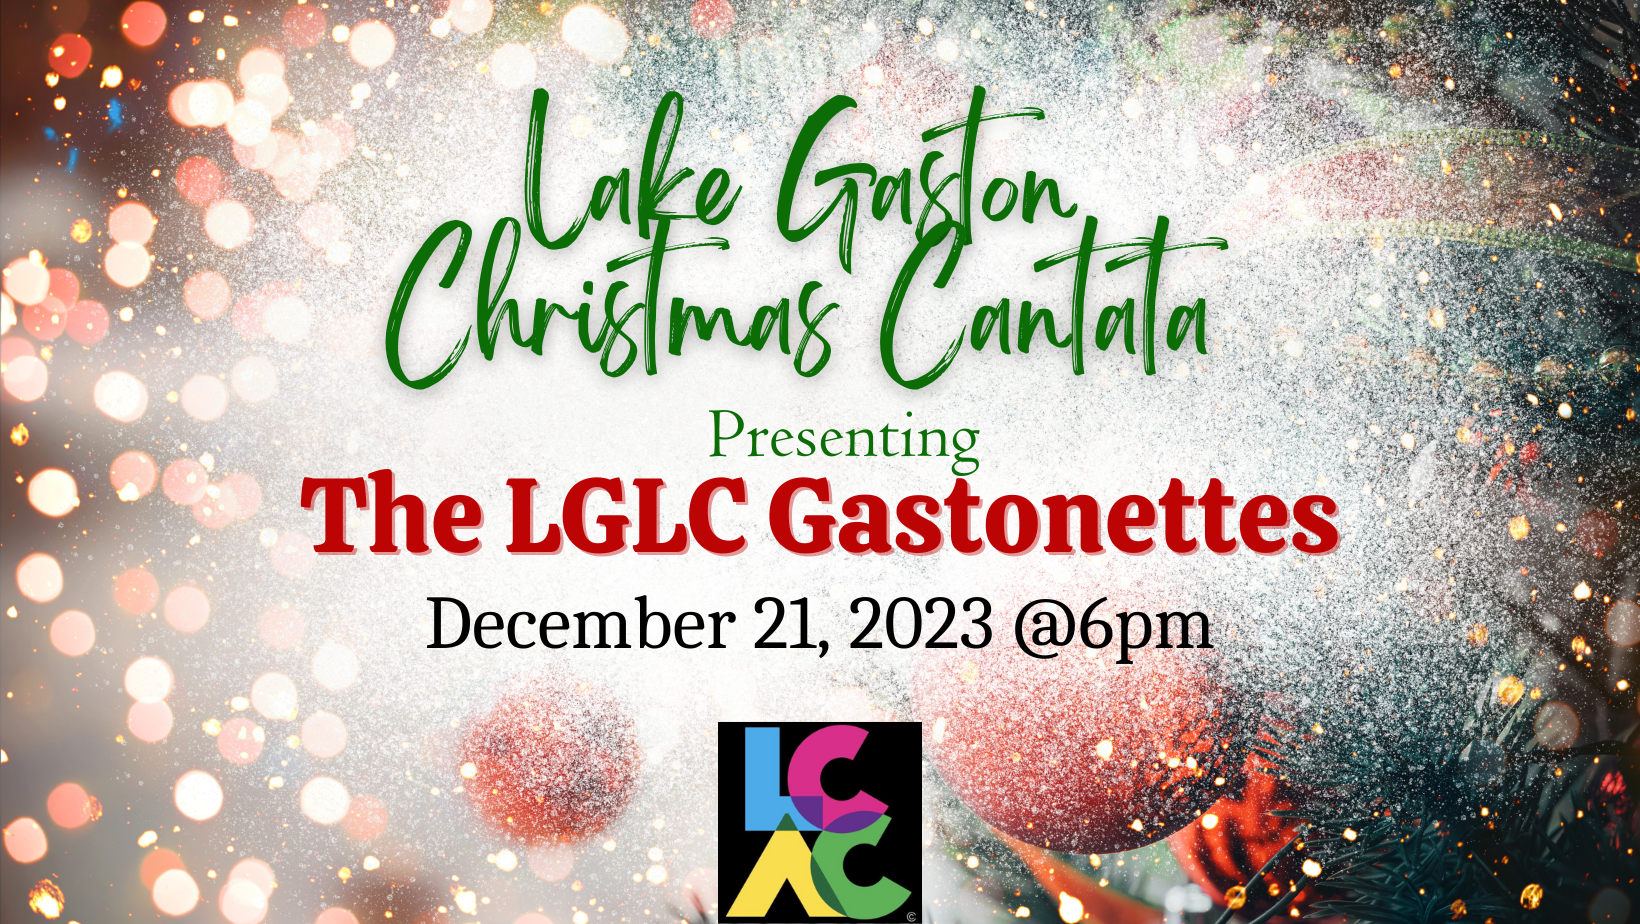 Lake Gaston Christmas Cantata lakeland cultural arts center december 2023